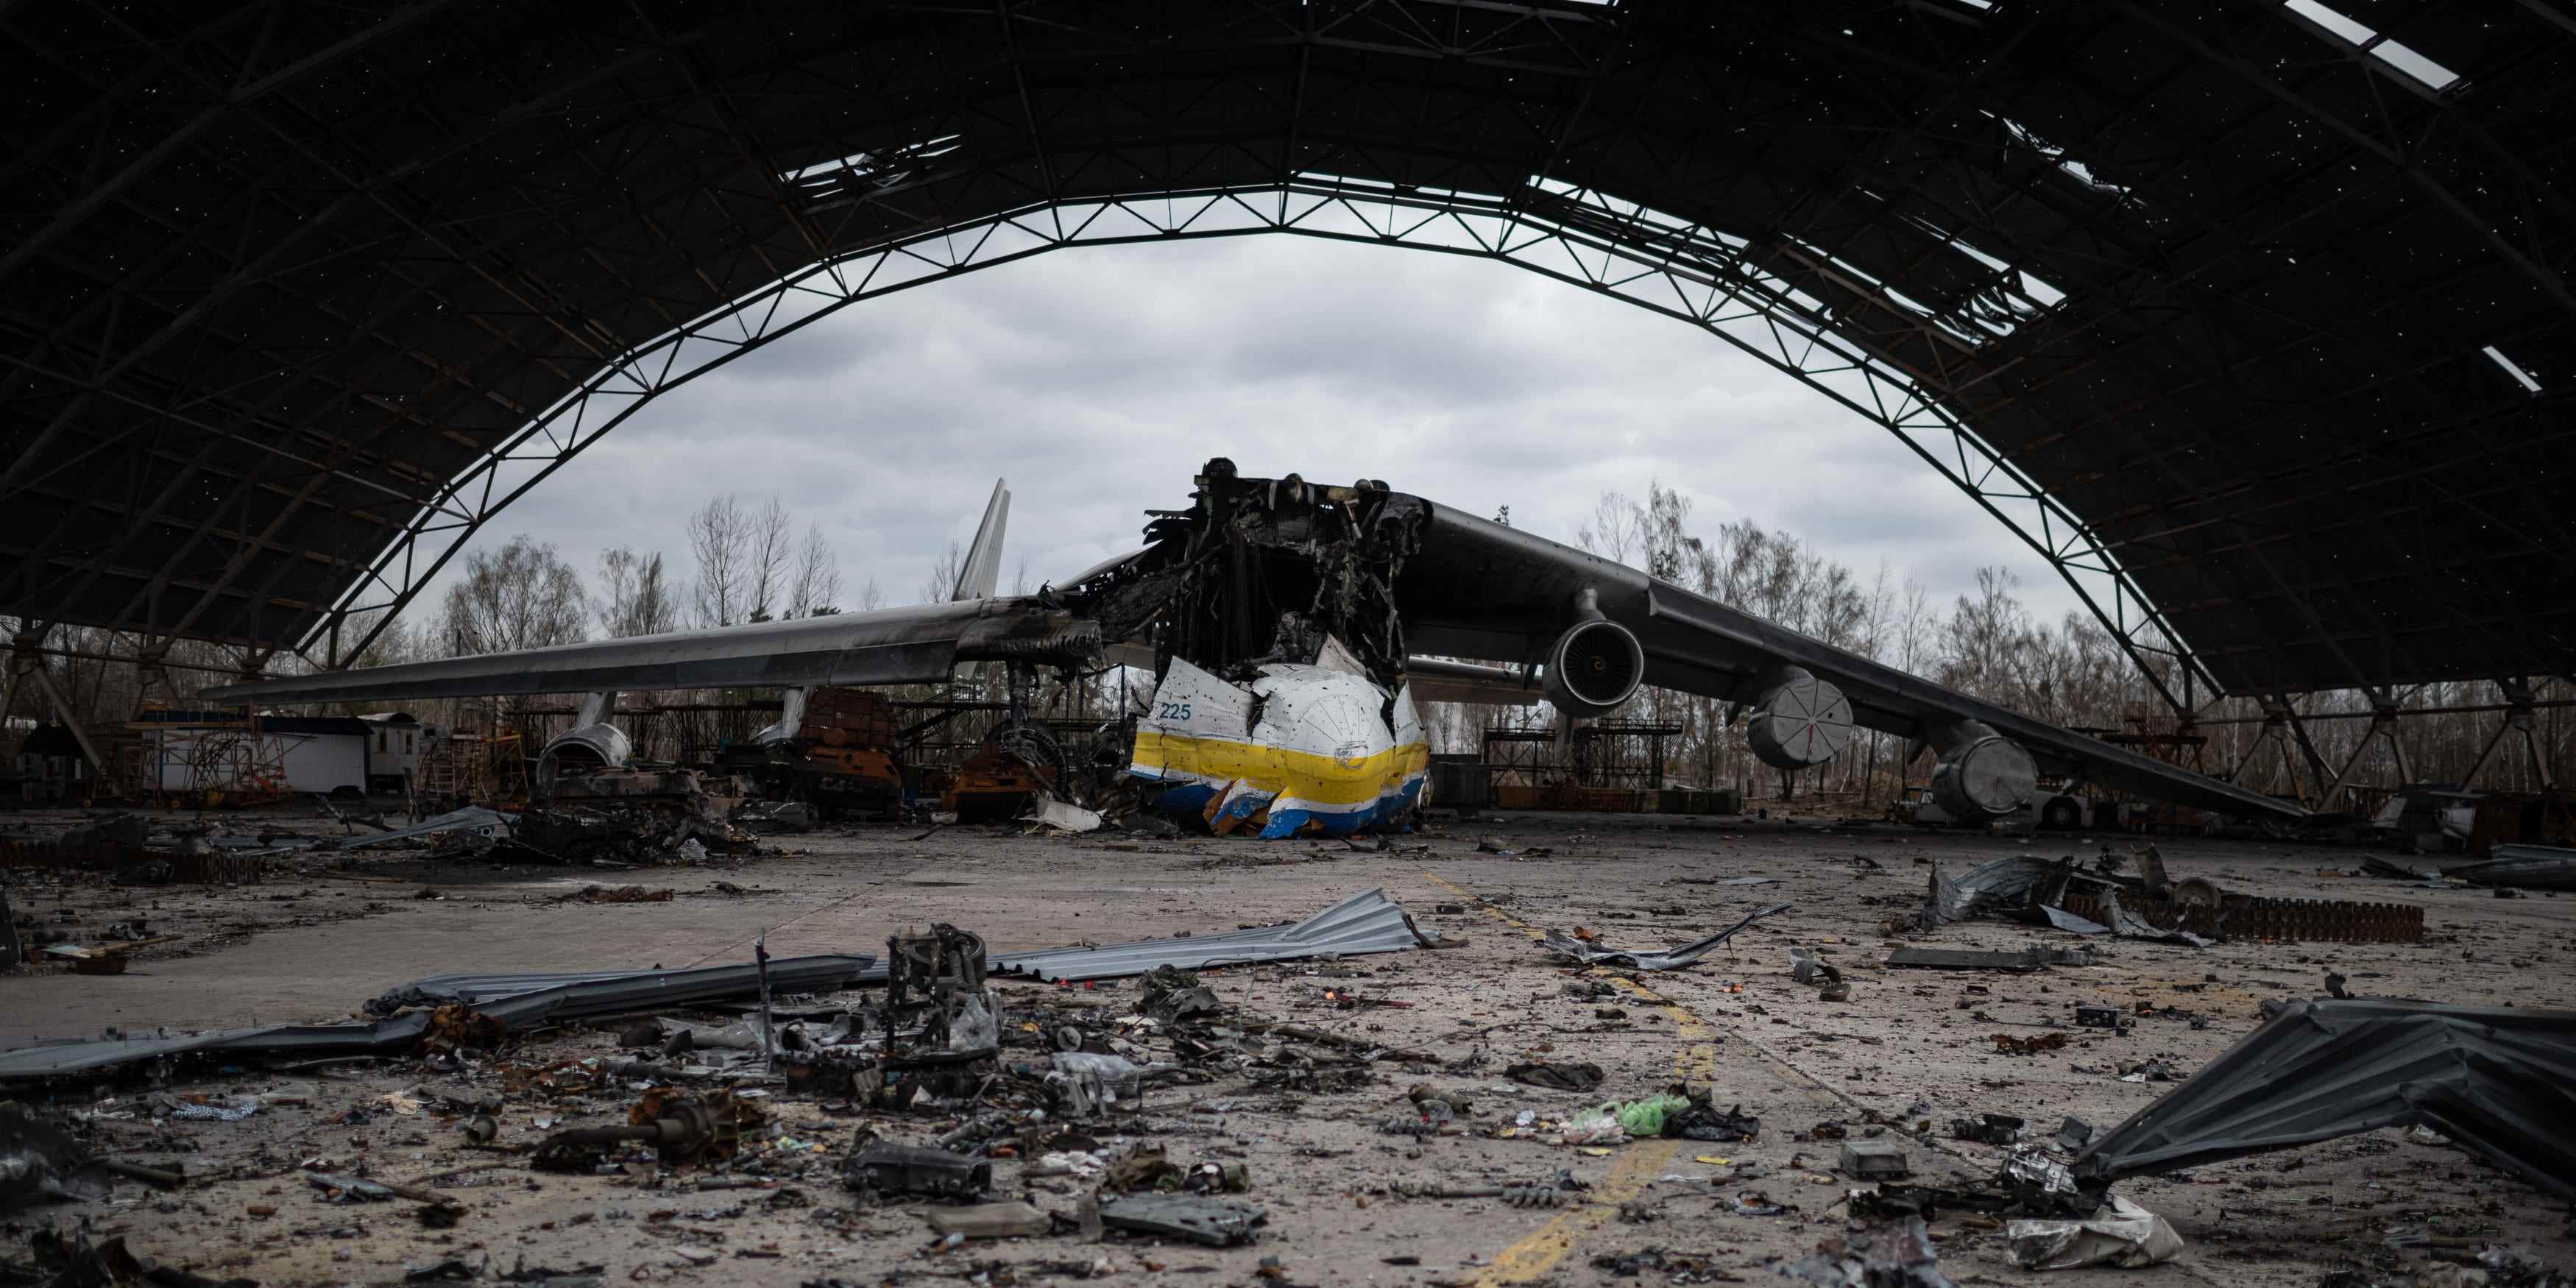 Das zerstörte ukrainische Frachtflugzeug Antonov An-225 „Mriya“, das größte Flugzeug der Welt, unter den Trümmern russischer Militärfahrzeuge auf dem Flugplatz Hostomel am 8. April 2022 in Hostomel, Ukraine.